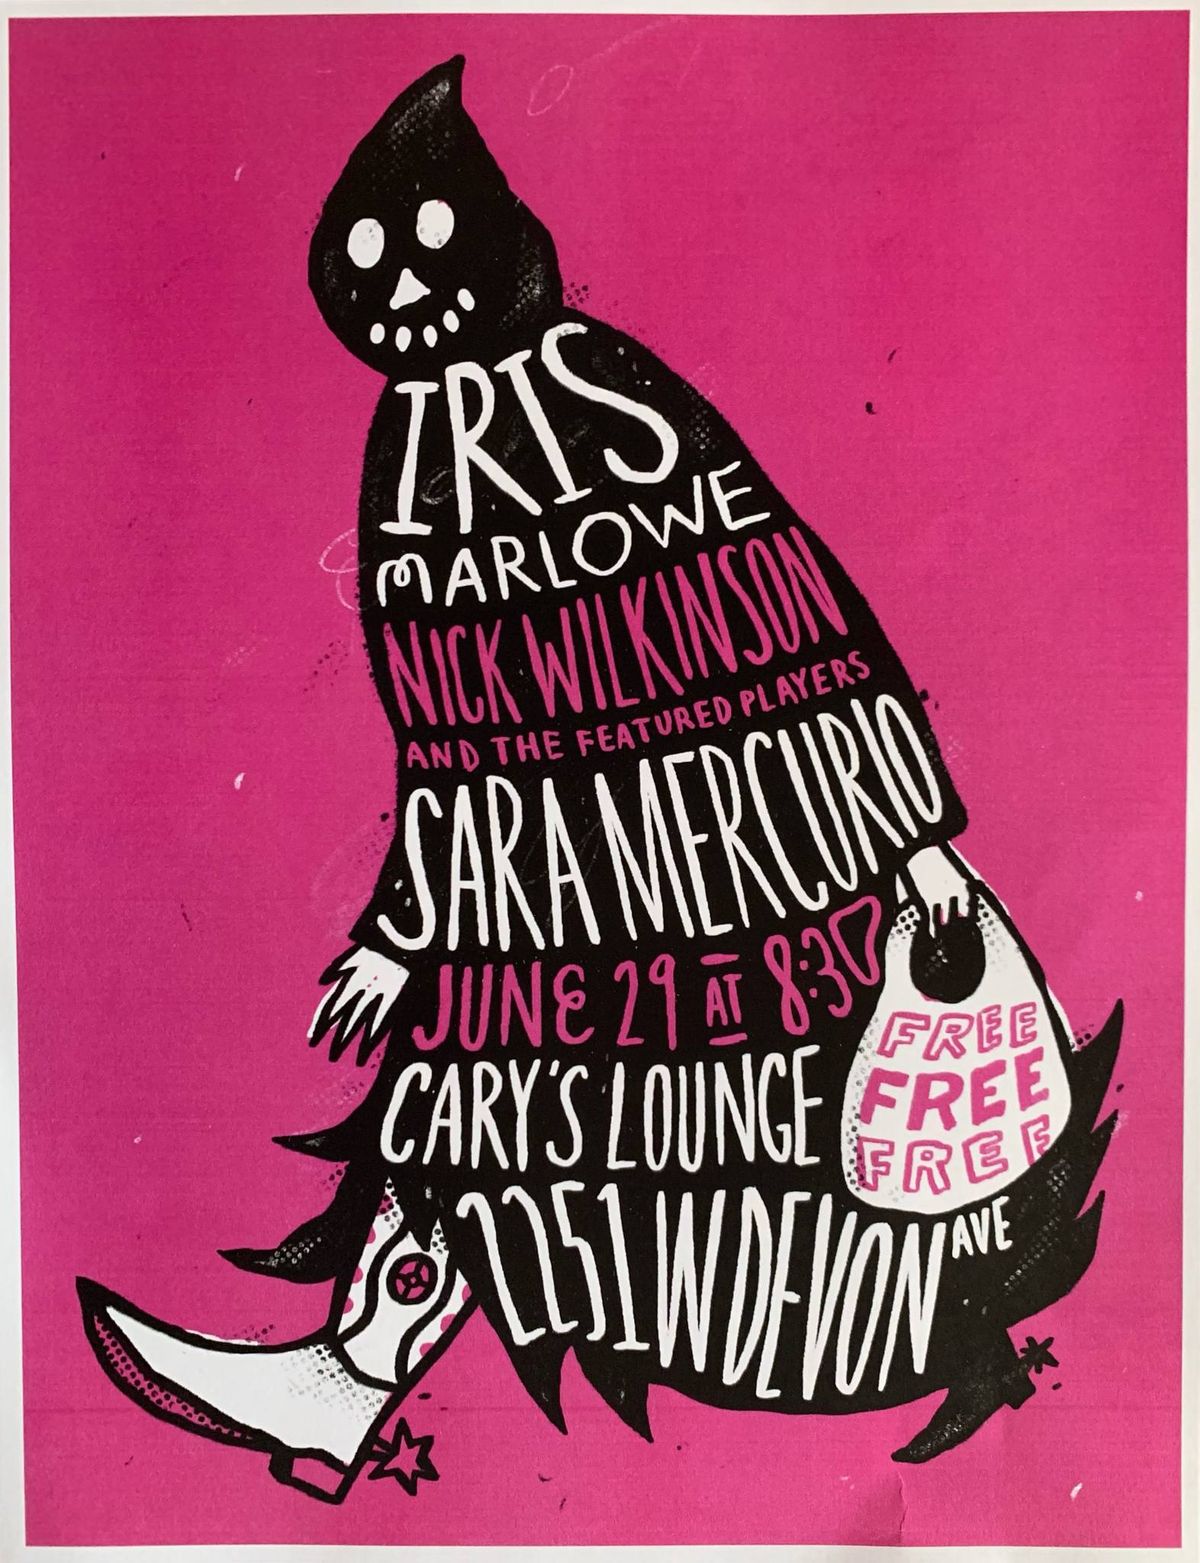 Iris Marlowe, Nick WIlkinson, and Sara Mercurio at Cary's Lounge!